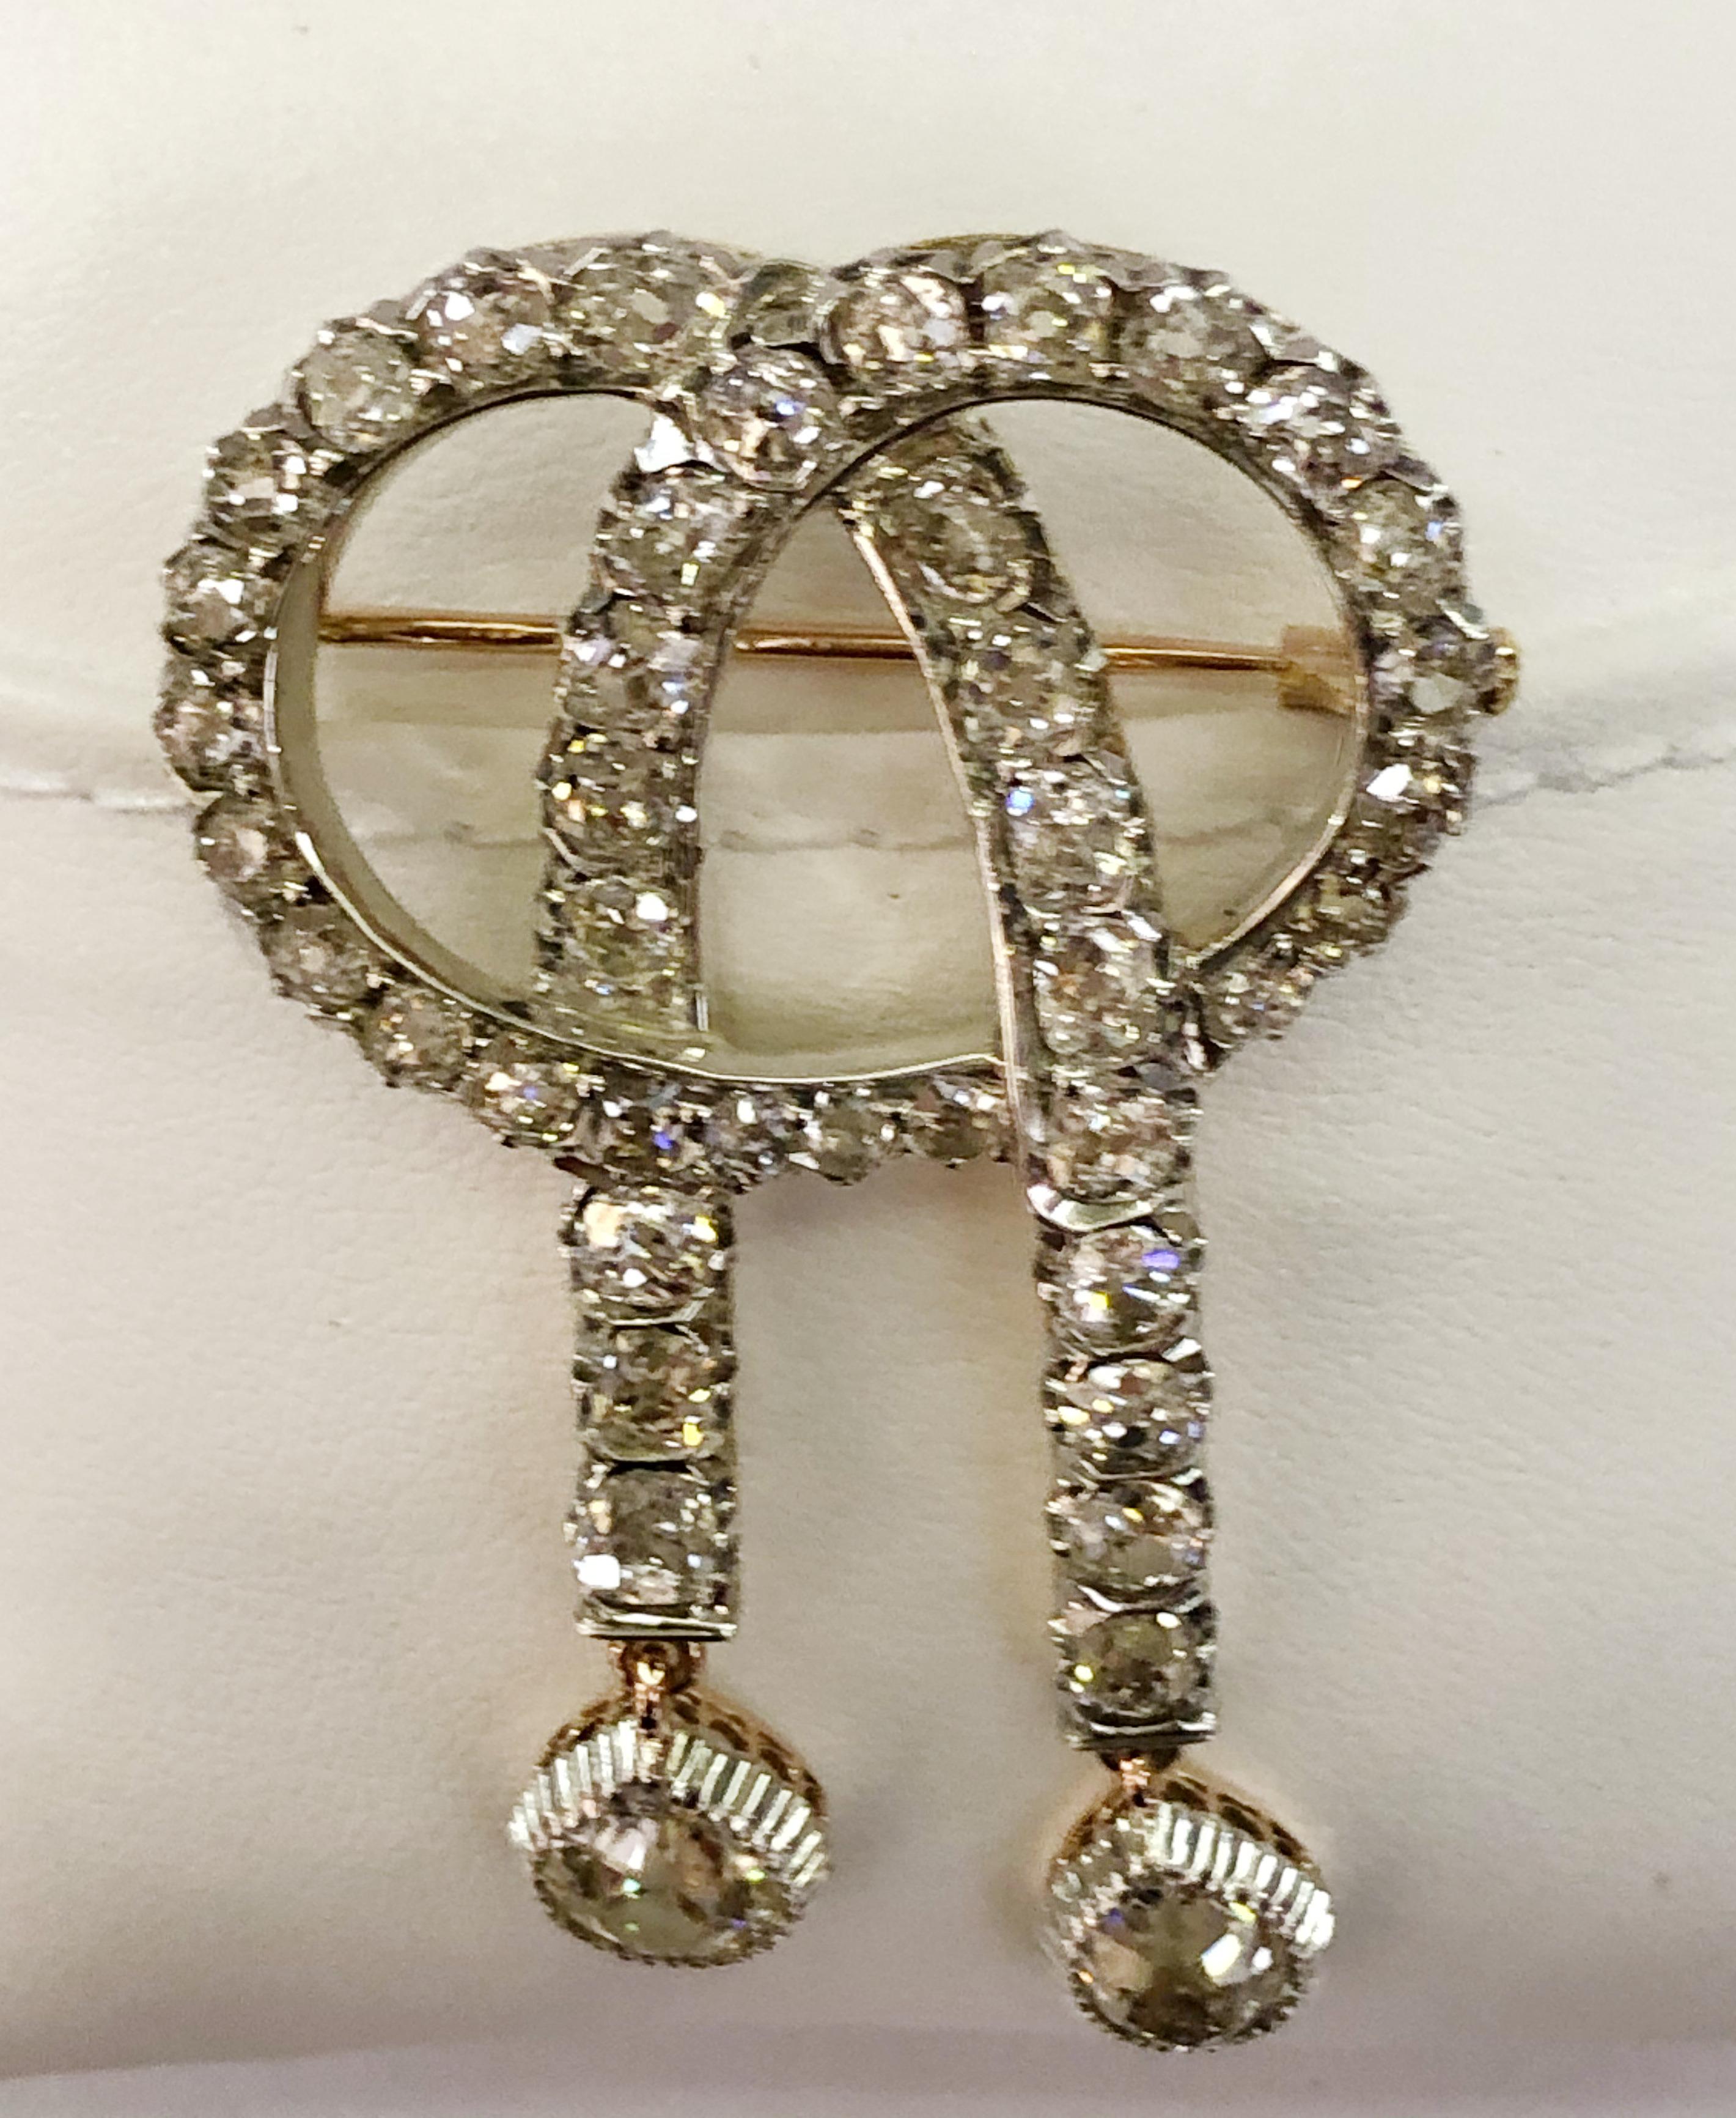 Broche vintage à nœuds en or jaune et argent 18 carats, et 40 petits diamants brillants avec 2 gros diamants pendants pour un total de 6 carats, Italie 1910-1930s
Longueur 6cm, largeur 3cm